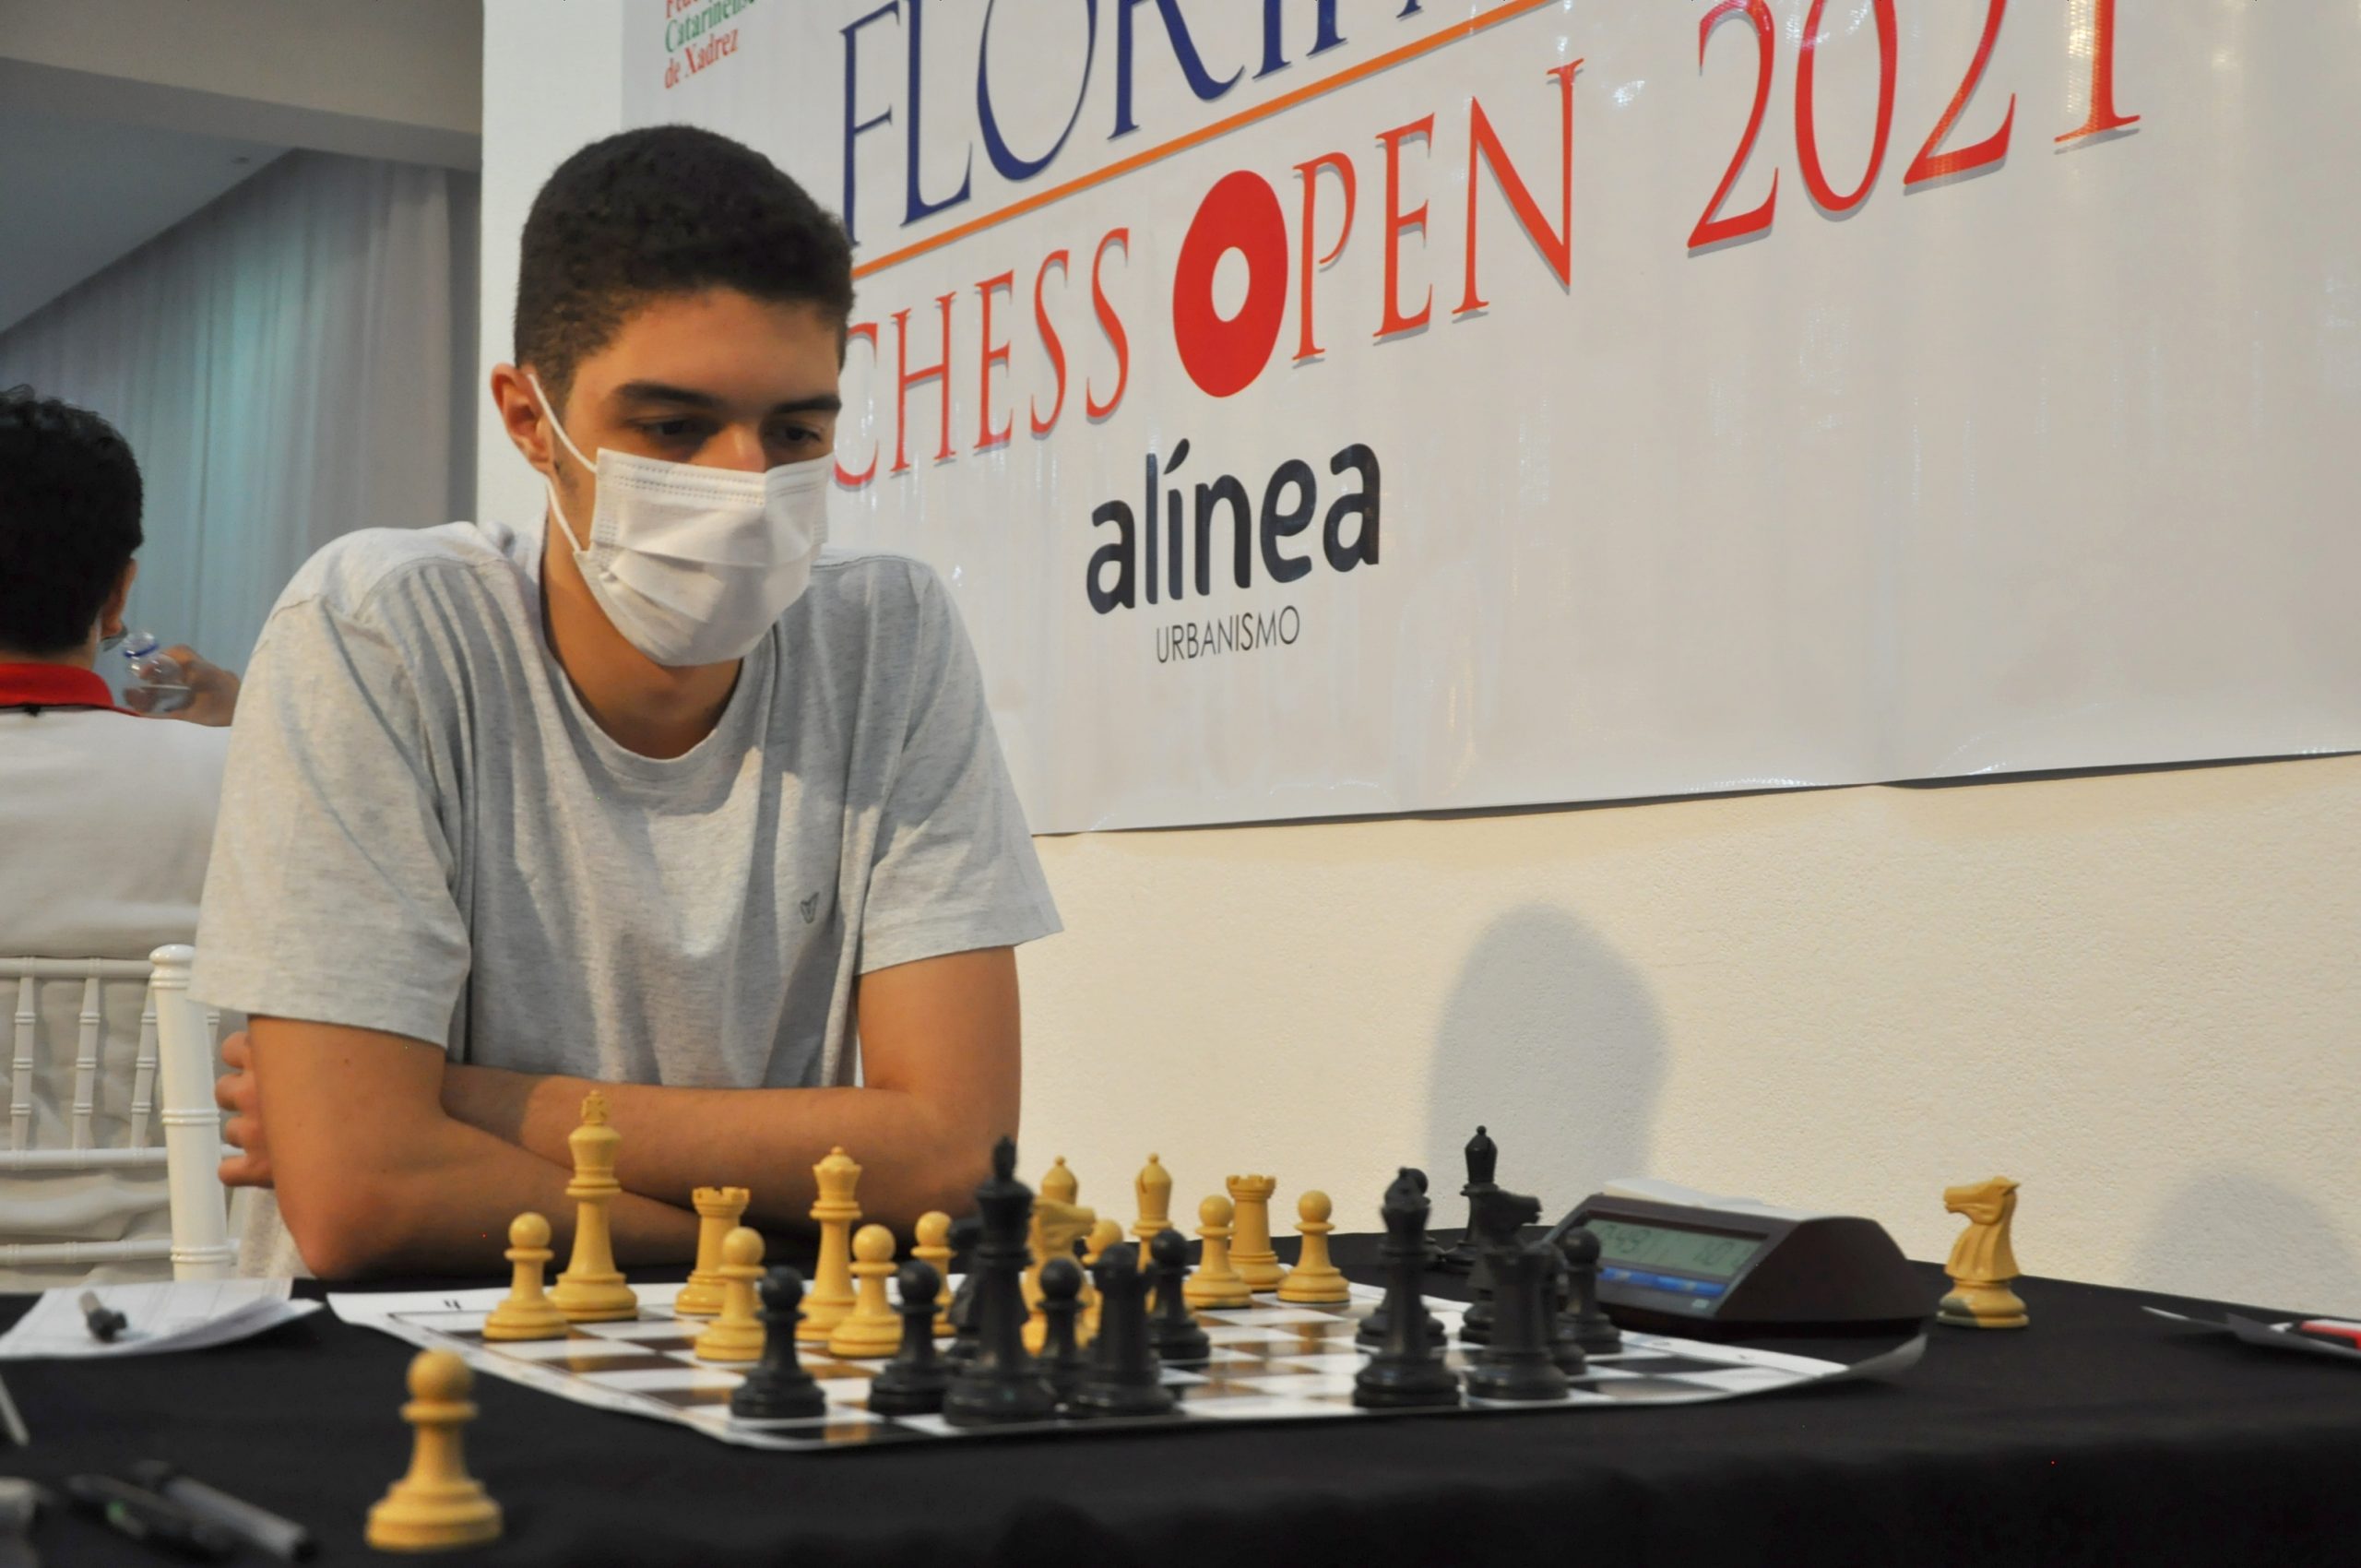 Floripa Chess Open – O maior torneio aberto de xadrez do Brasil!